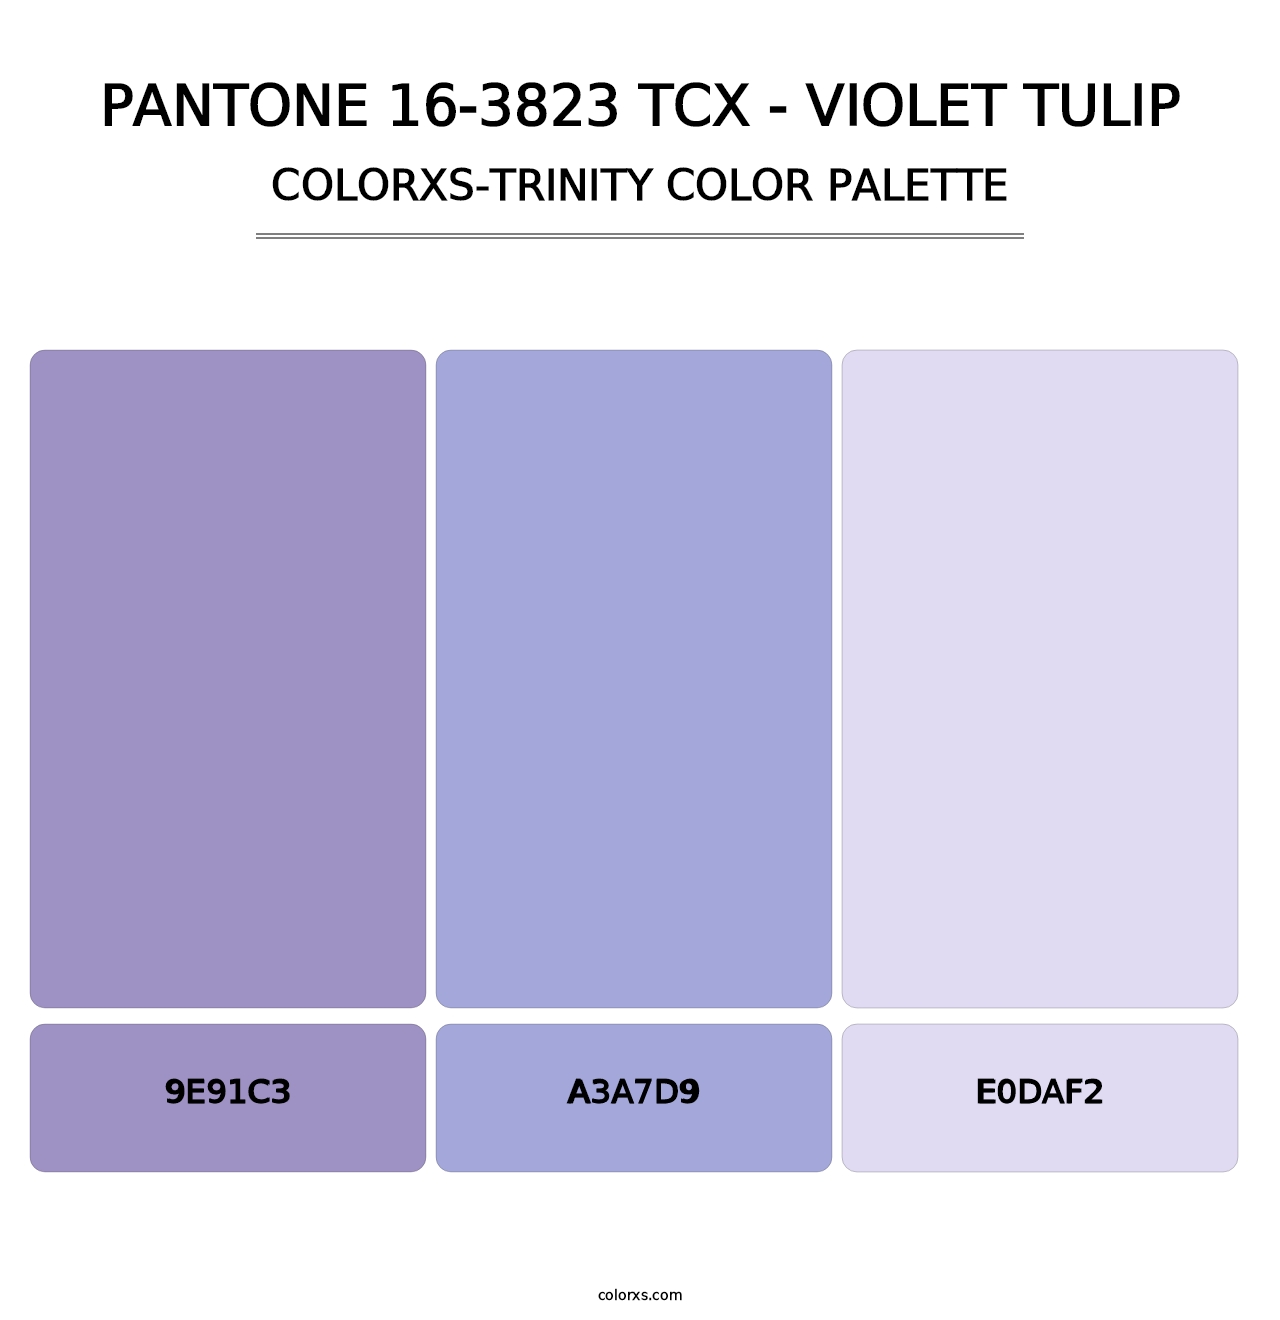 PANTONE 16-3823 TCX - Violet Tulip - Colorxs Trinity Palette